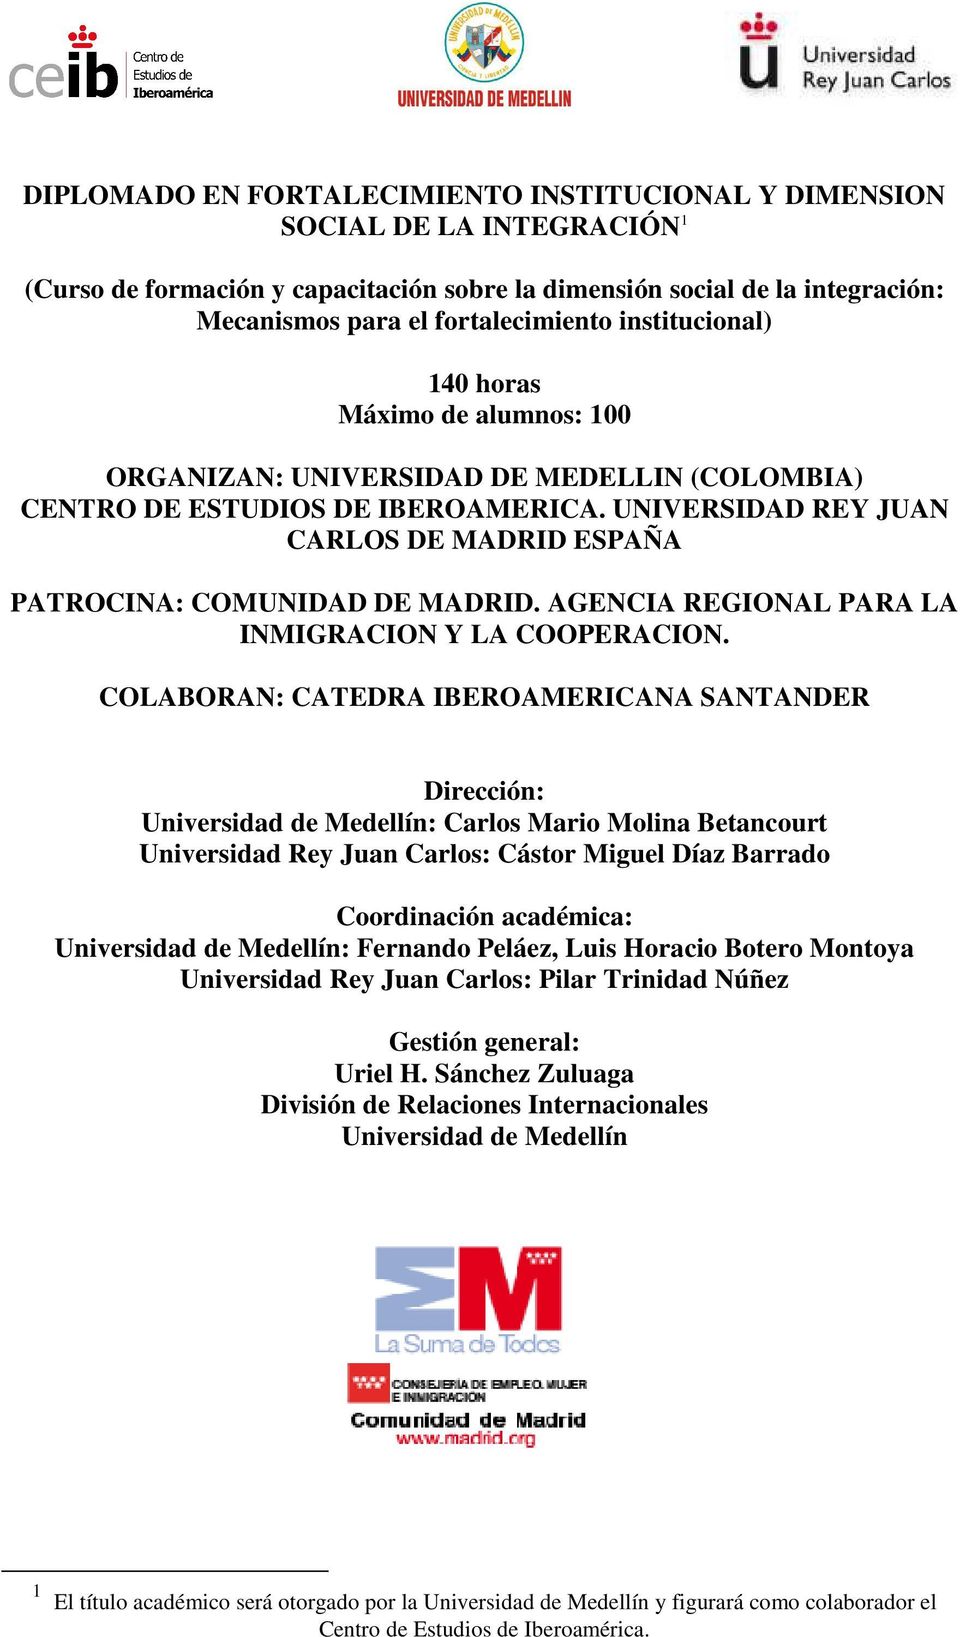 UNIVERSIDAD REY JUAN CARLOS DE MADRID ESPAÑA PATROCINA: COMUNIDAD DE MADRID. AGENCIA REGIONAL PARA LA INMIGRACION Y LA COOPERACION.